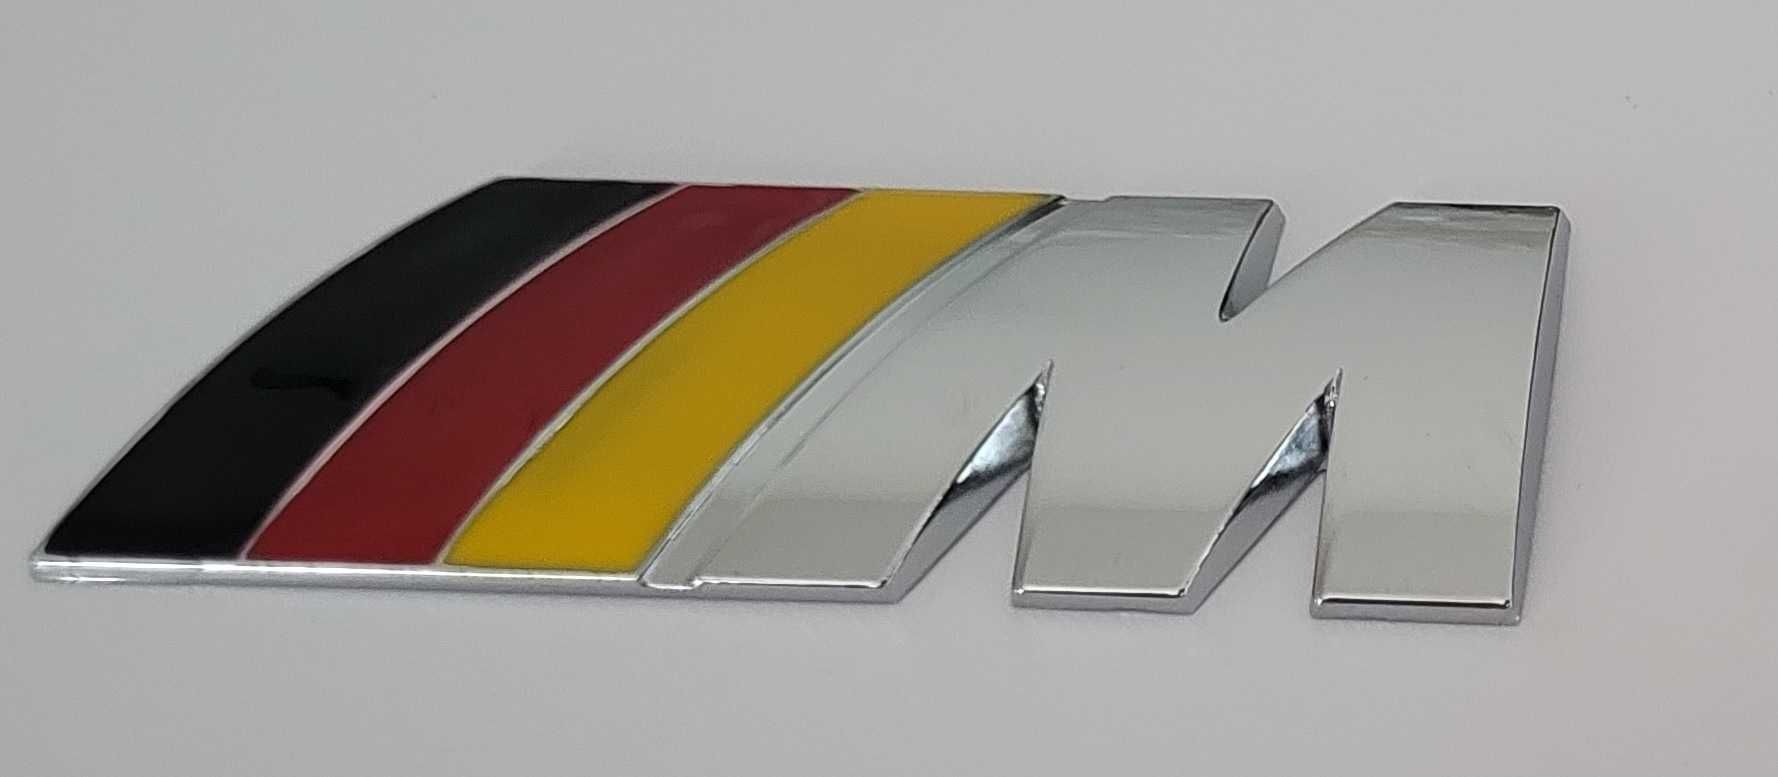 Nowy przyklejany znaczek Mpower m power M3 metal emblemat logo żółty